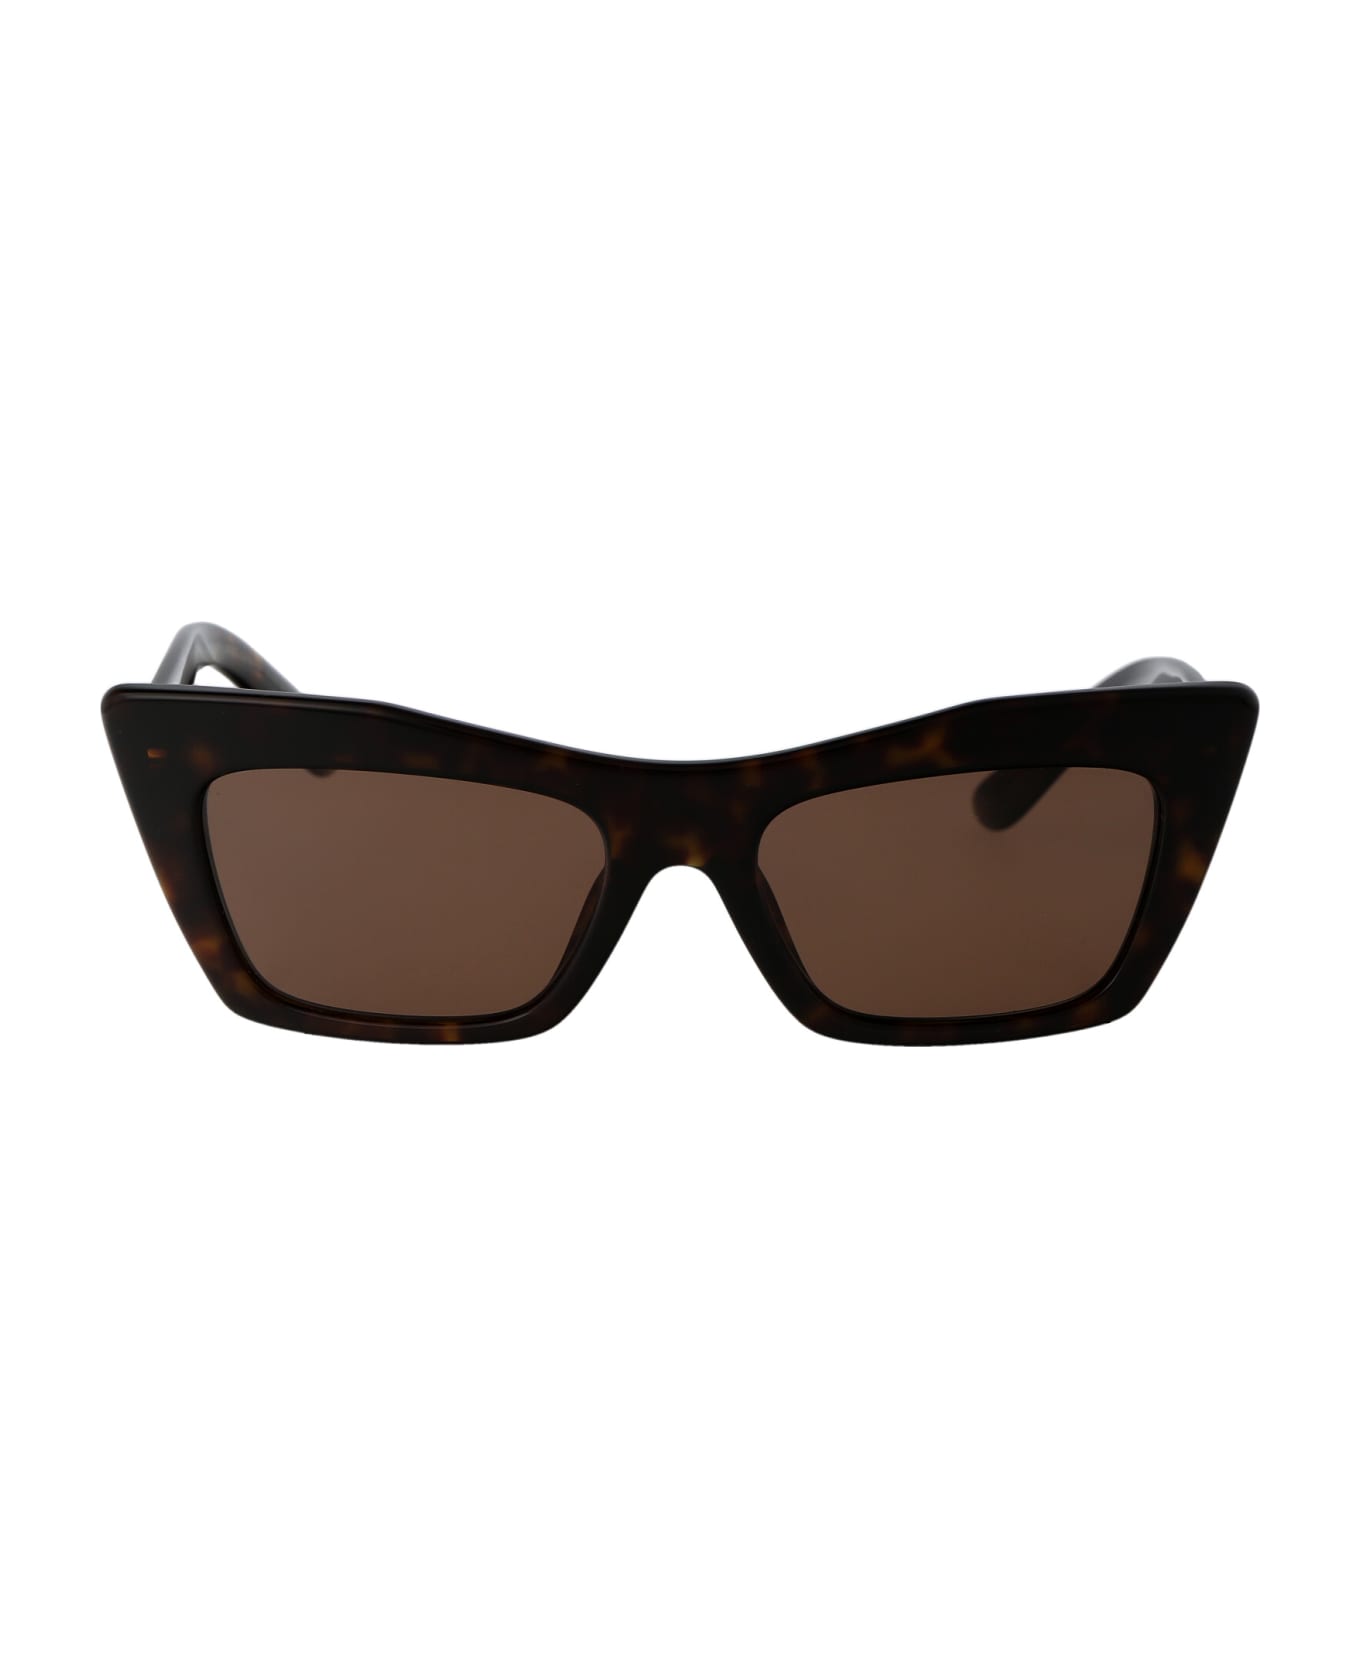 Dolce & Gabbana Eyewear 0dg4435 Sunglasses - 502/73 HAVANA